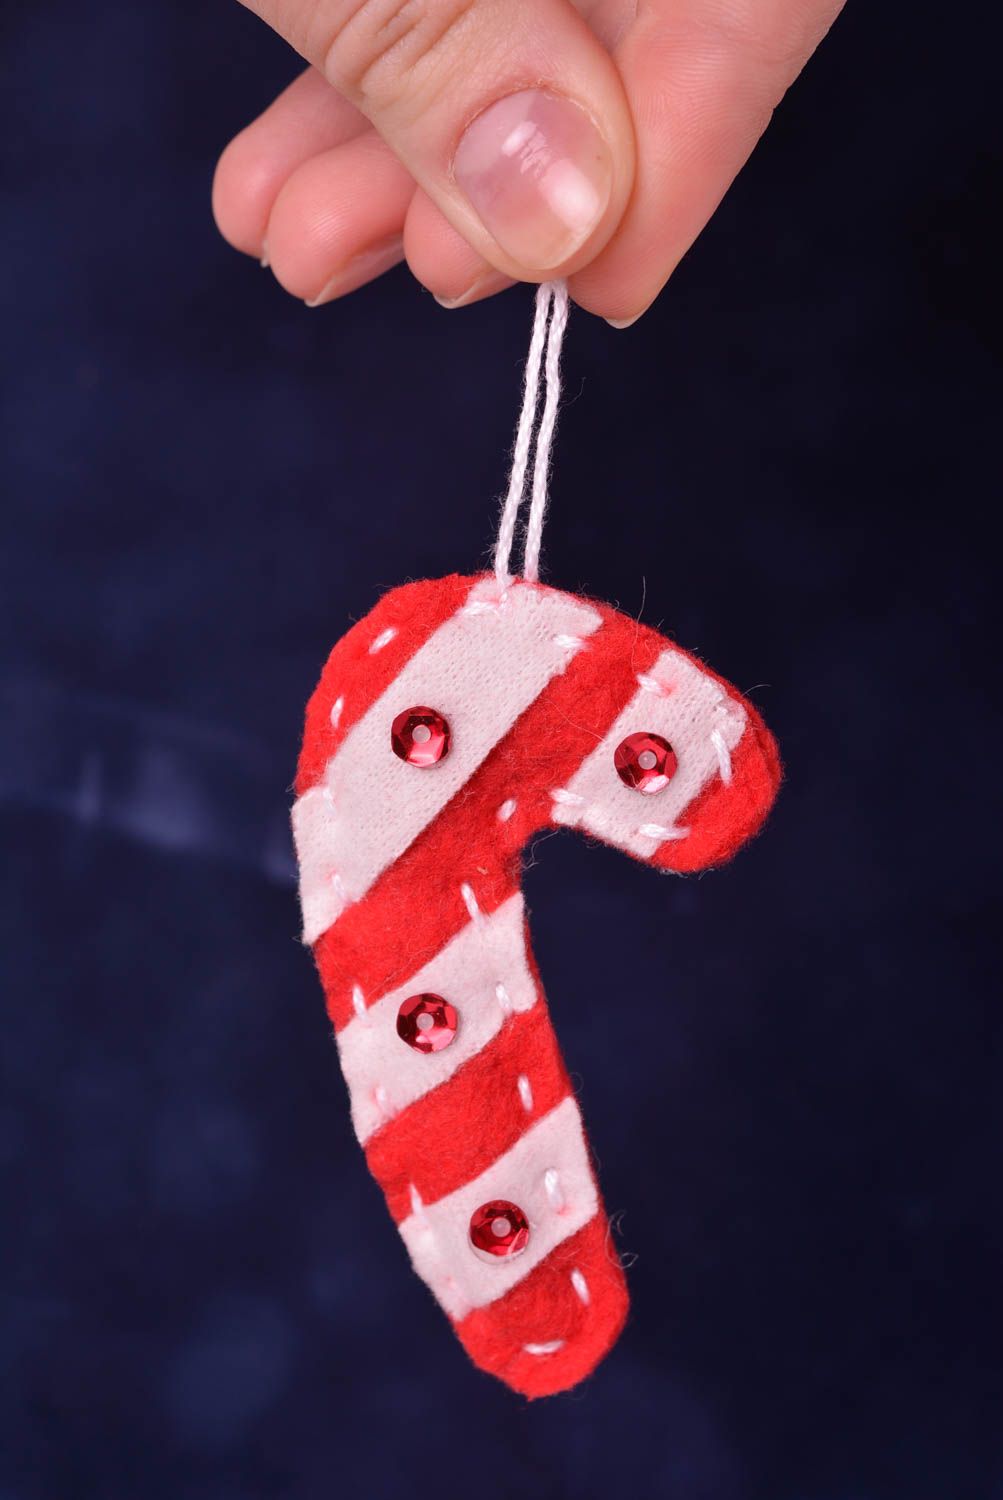 Adorno navideño casero hecho a mano elemento decorativo regalo original foto 2